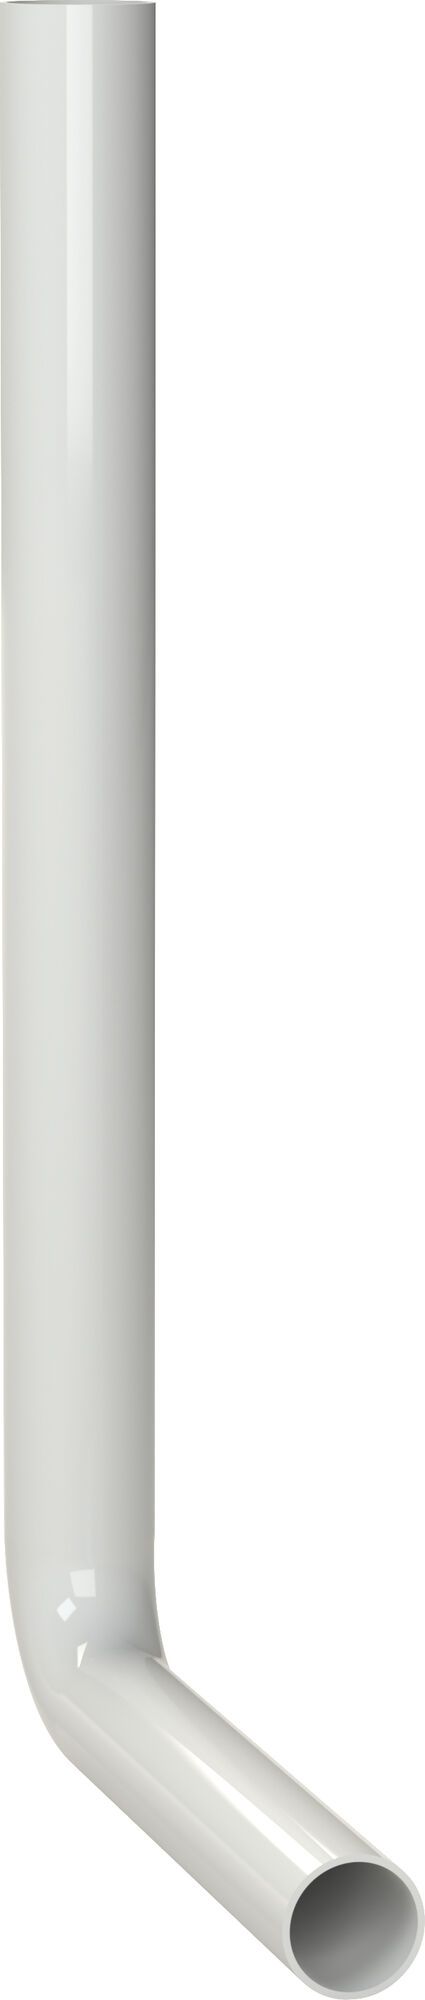 KOLANO SPUSTOWE 550 x 300 mm, biały